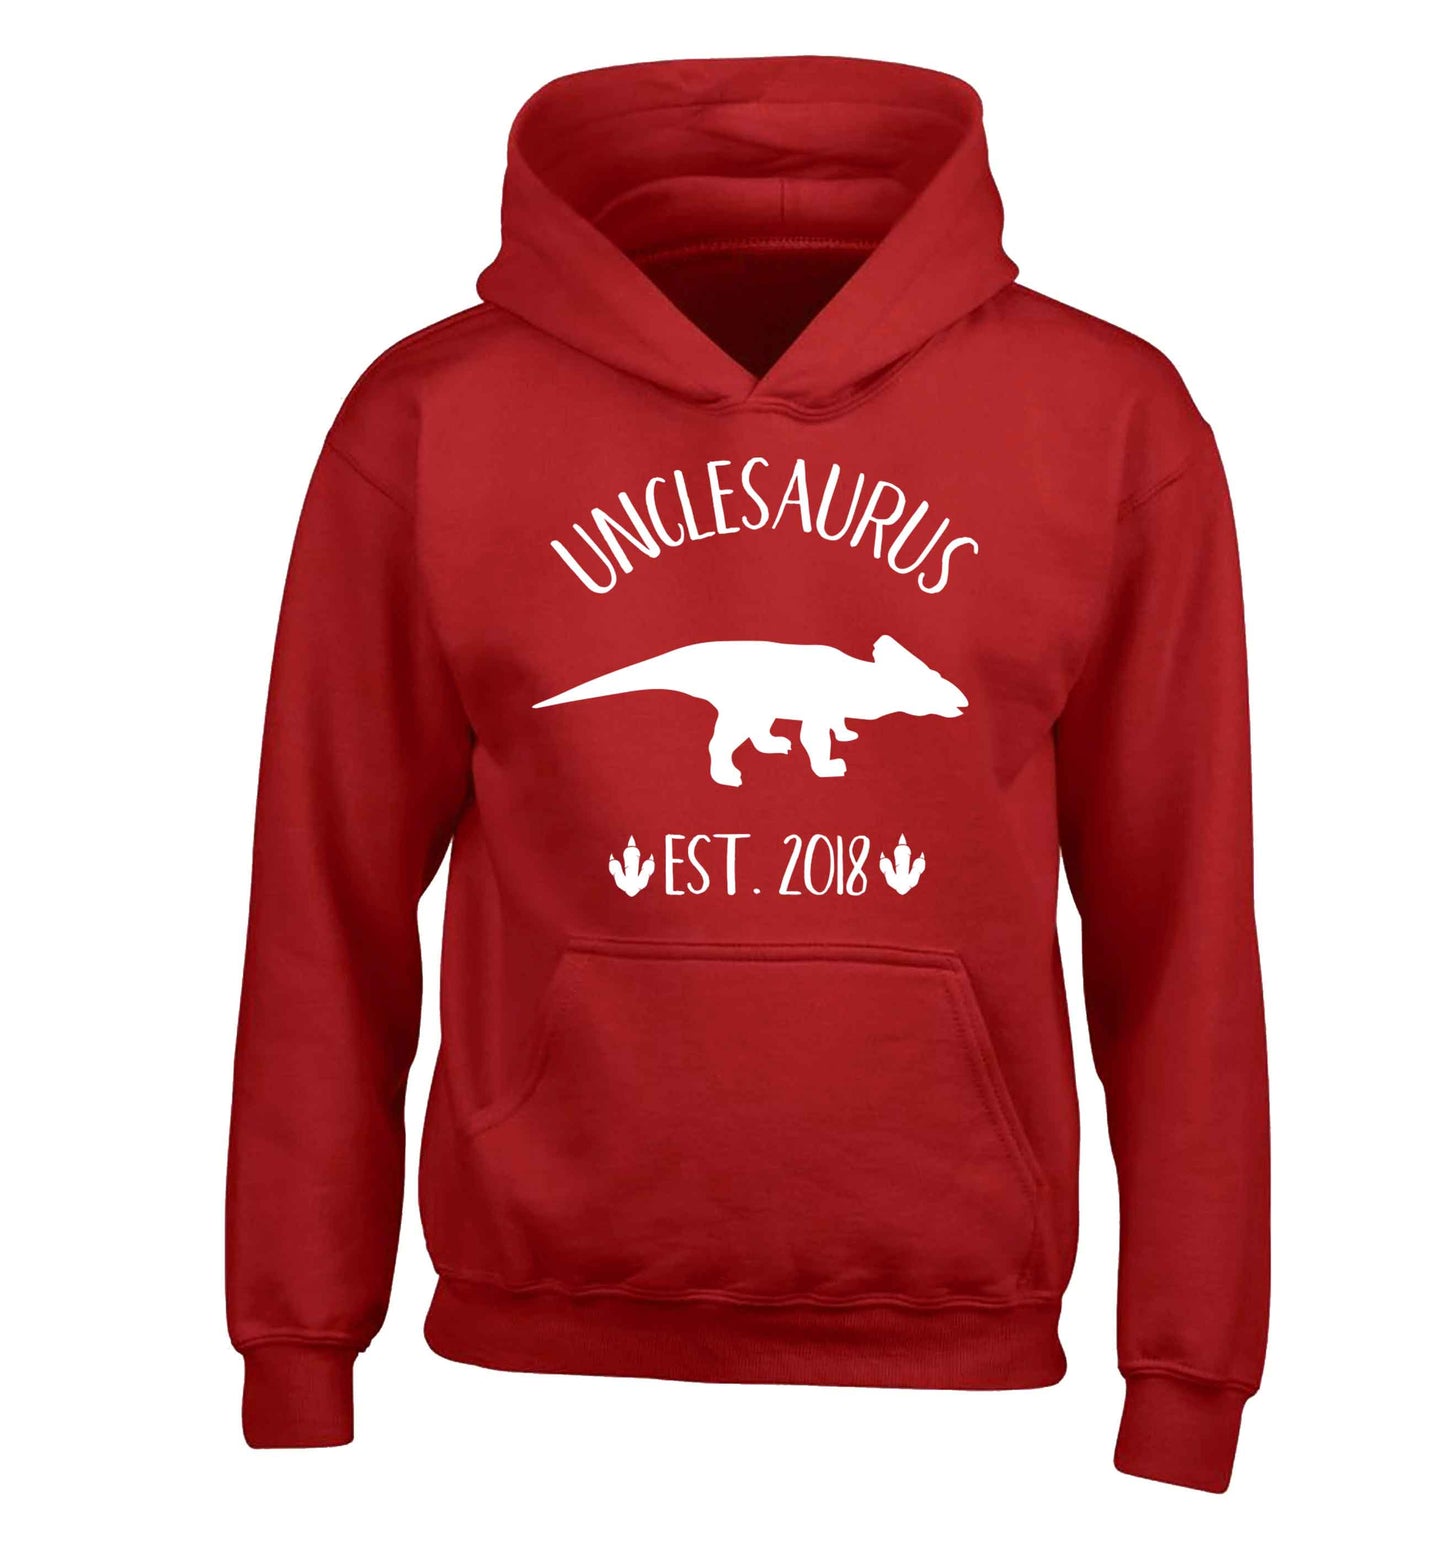 Personalised unclesaurus since (custom date) children's red hoodie 12-13 Years